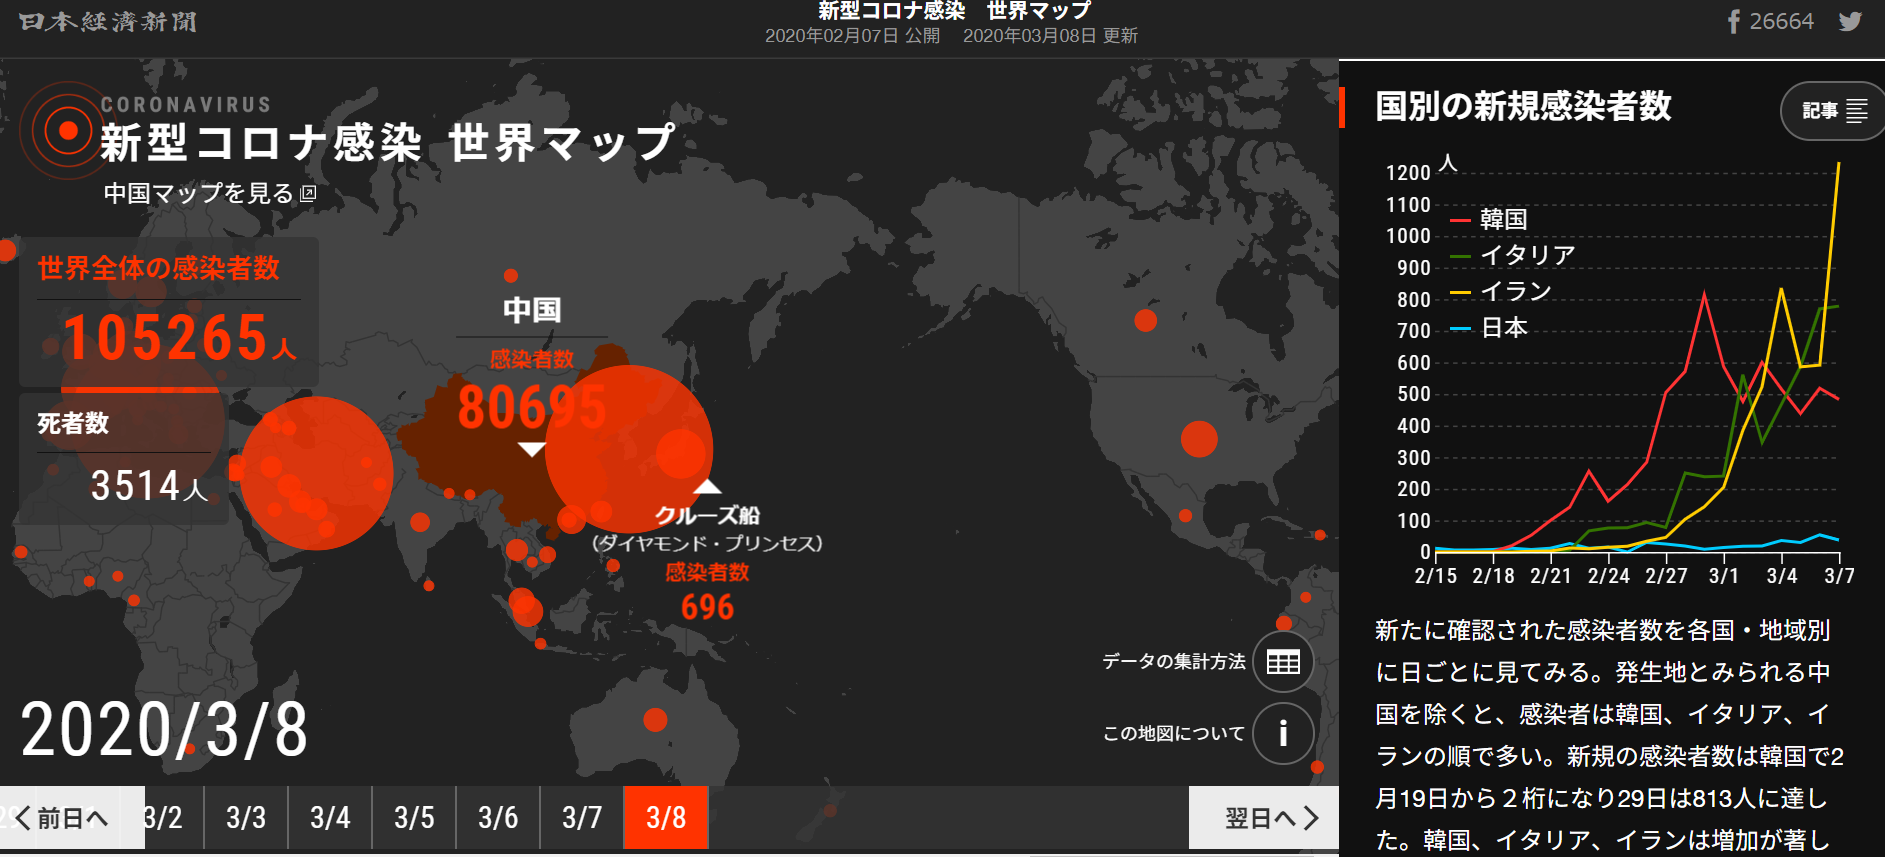 日経新聞 新型コロナウイルス 世界の感染者マップ - 日本の新型コロナウイルス感染者数と感染防止法 